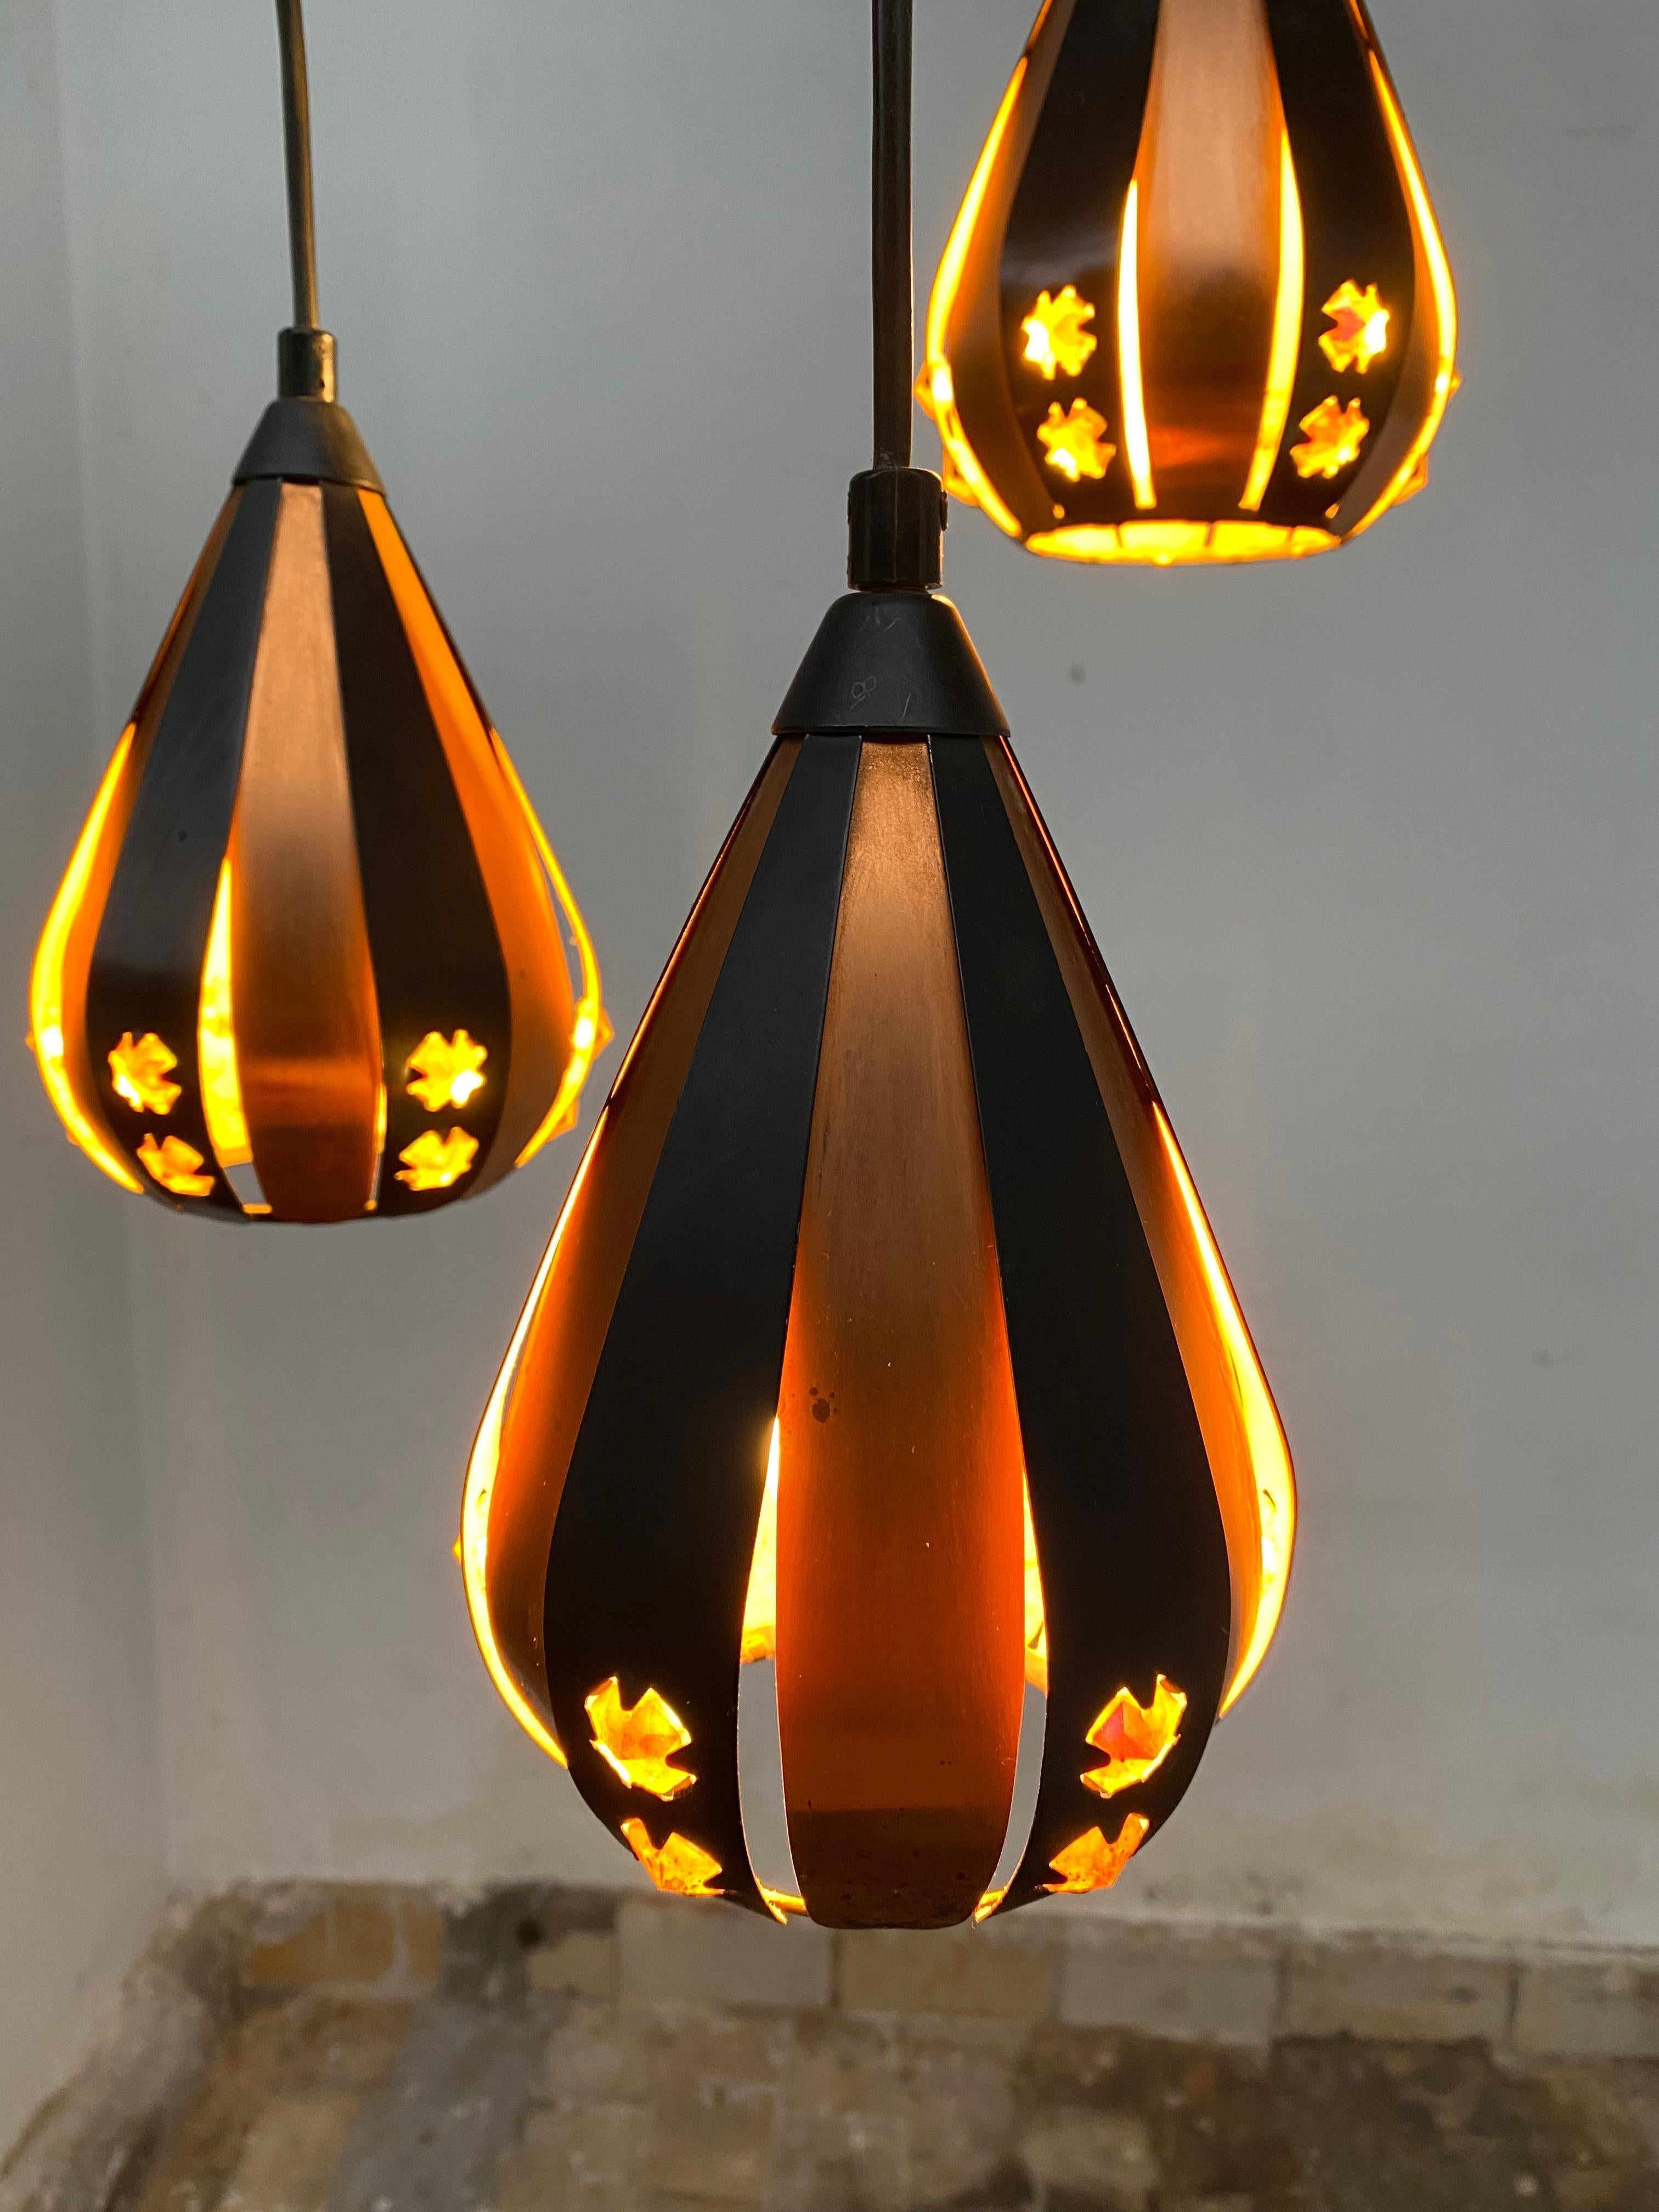 Lustre avec trois magnifiques lampes suspendues en forme de goutte d'eau par Werner Schou pour Coronell Electrical Denmark produit vers 1970

Fabriqué à partir de cuivre, de lamelles de métal noir et de morceaux de verre rectangulaires taillés.

Ce